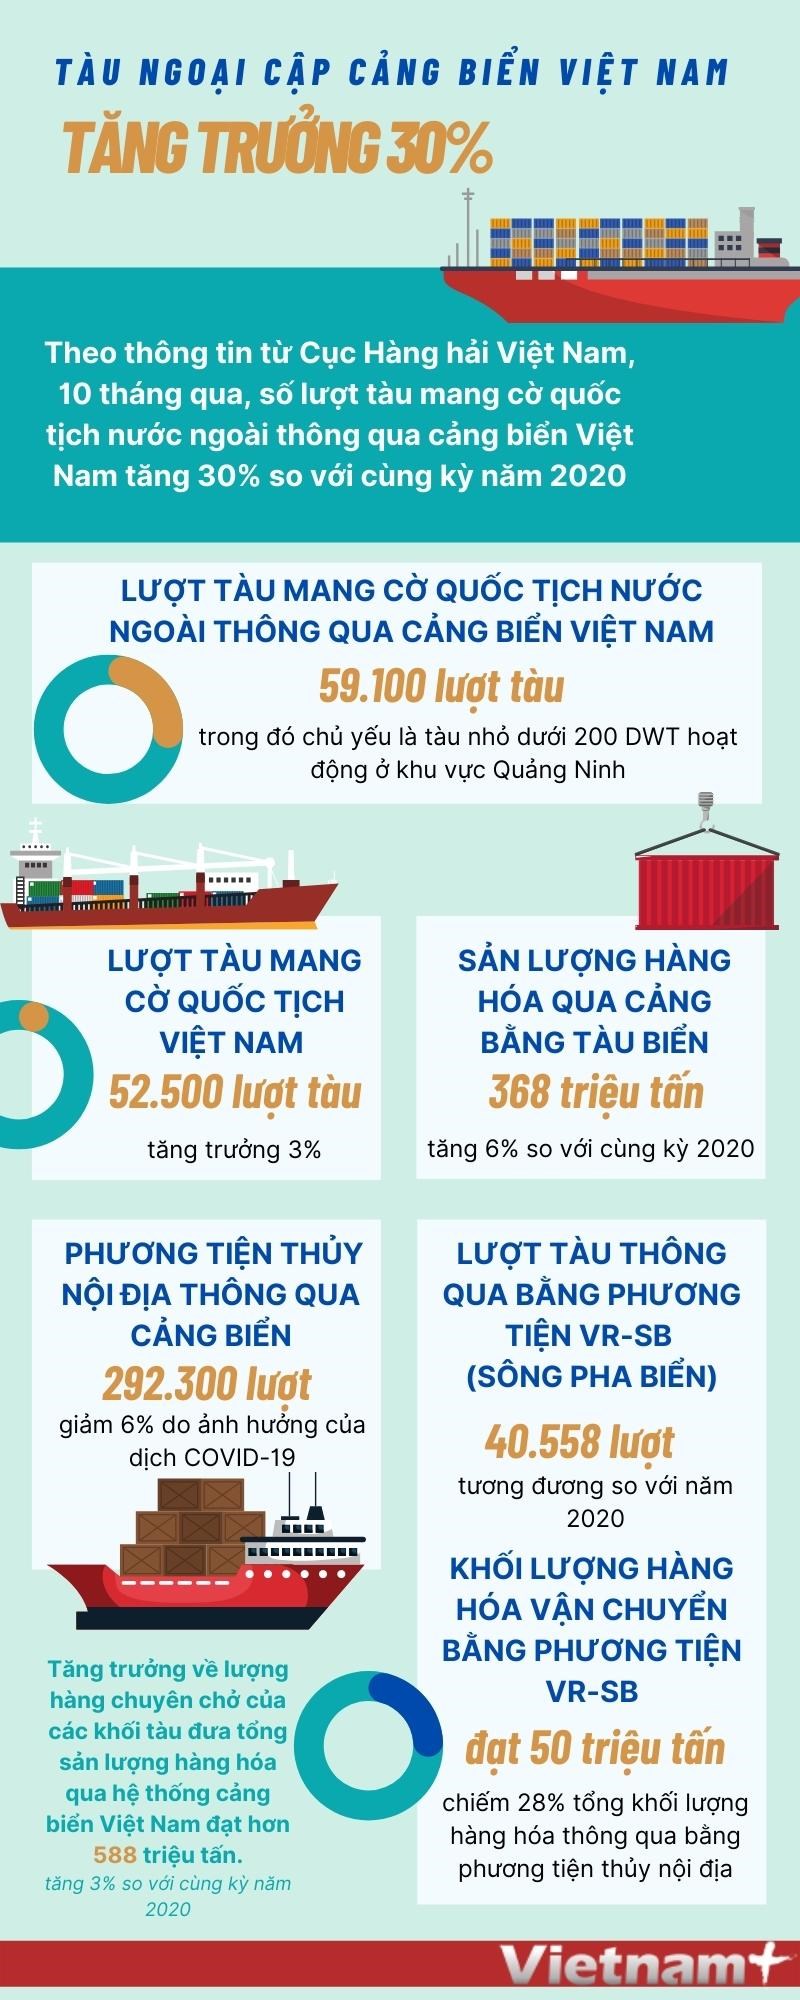 [Infographics] Tau ngoai cap cang bien Viet Nam tang truong 30% hinh anh 1